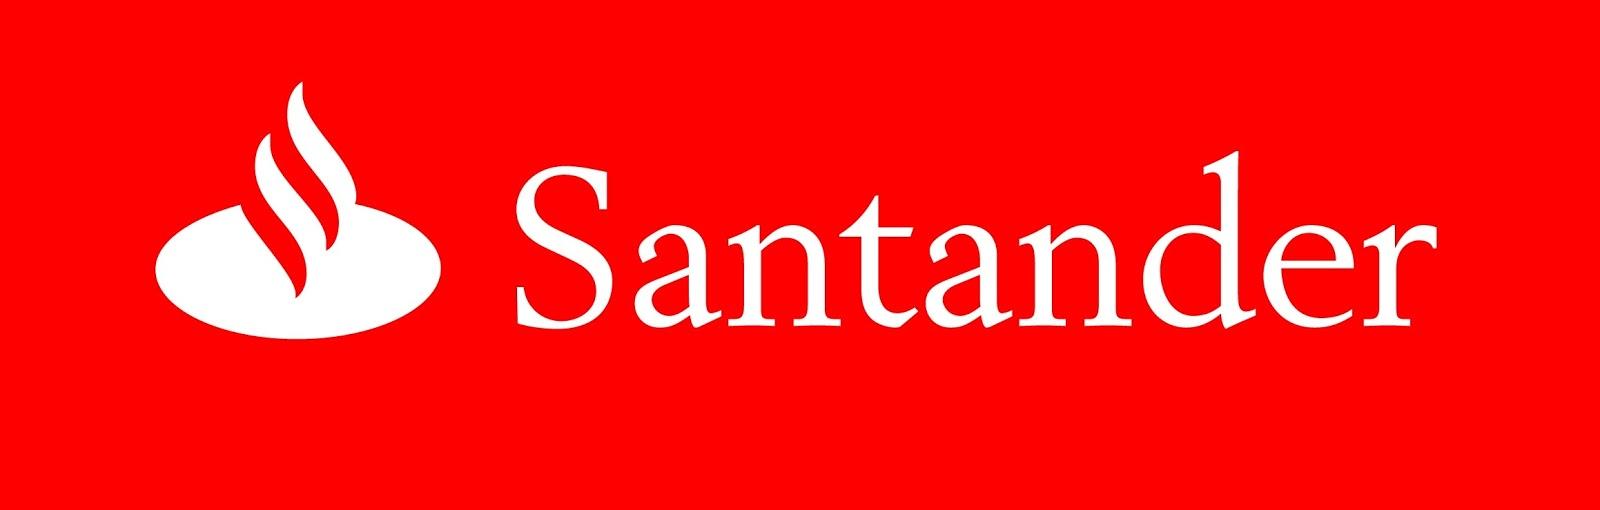 Banco Santander vende parte de su negocio de seguros